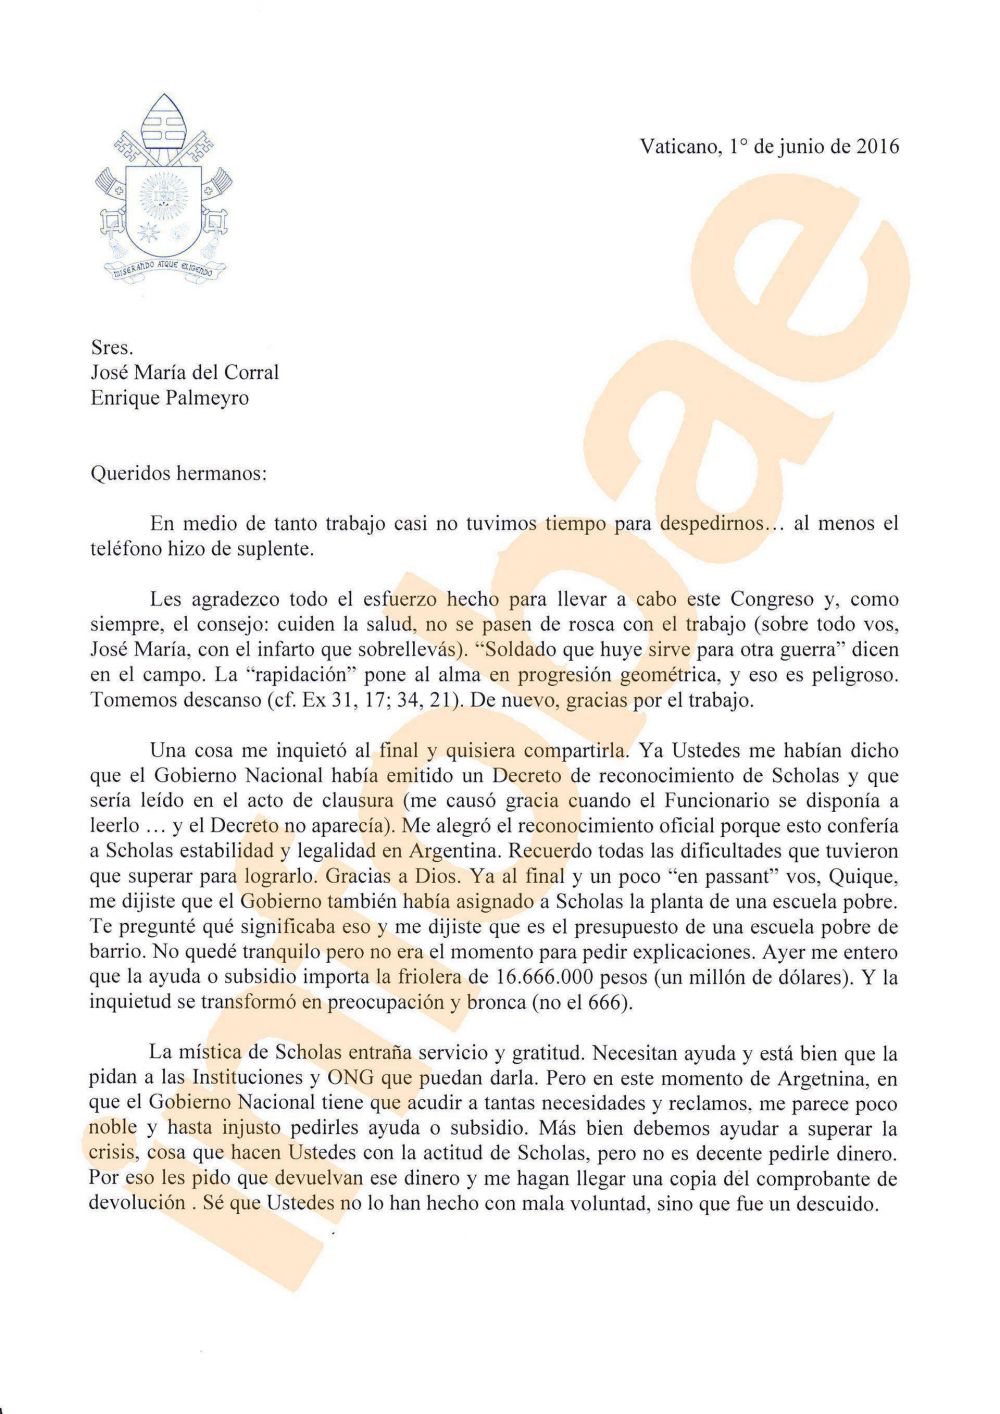 Exclusivo: la carta completa del papa Francisco a Scholas Occurrentes